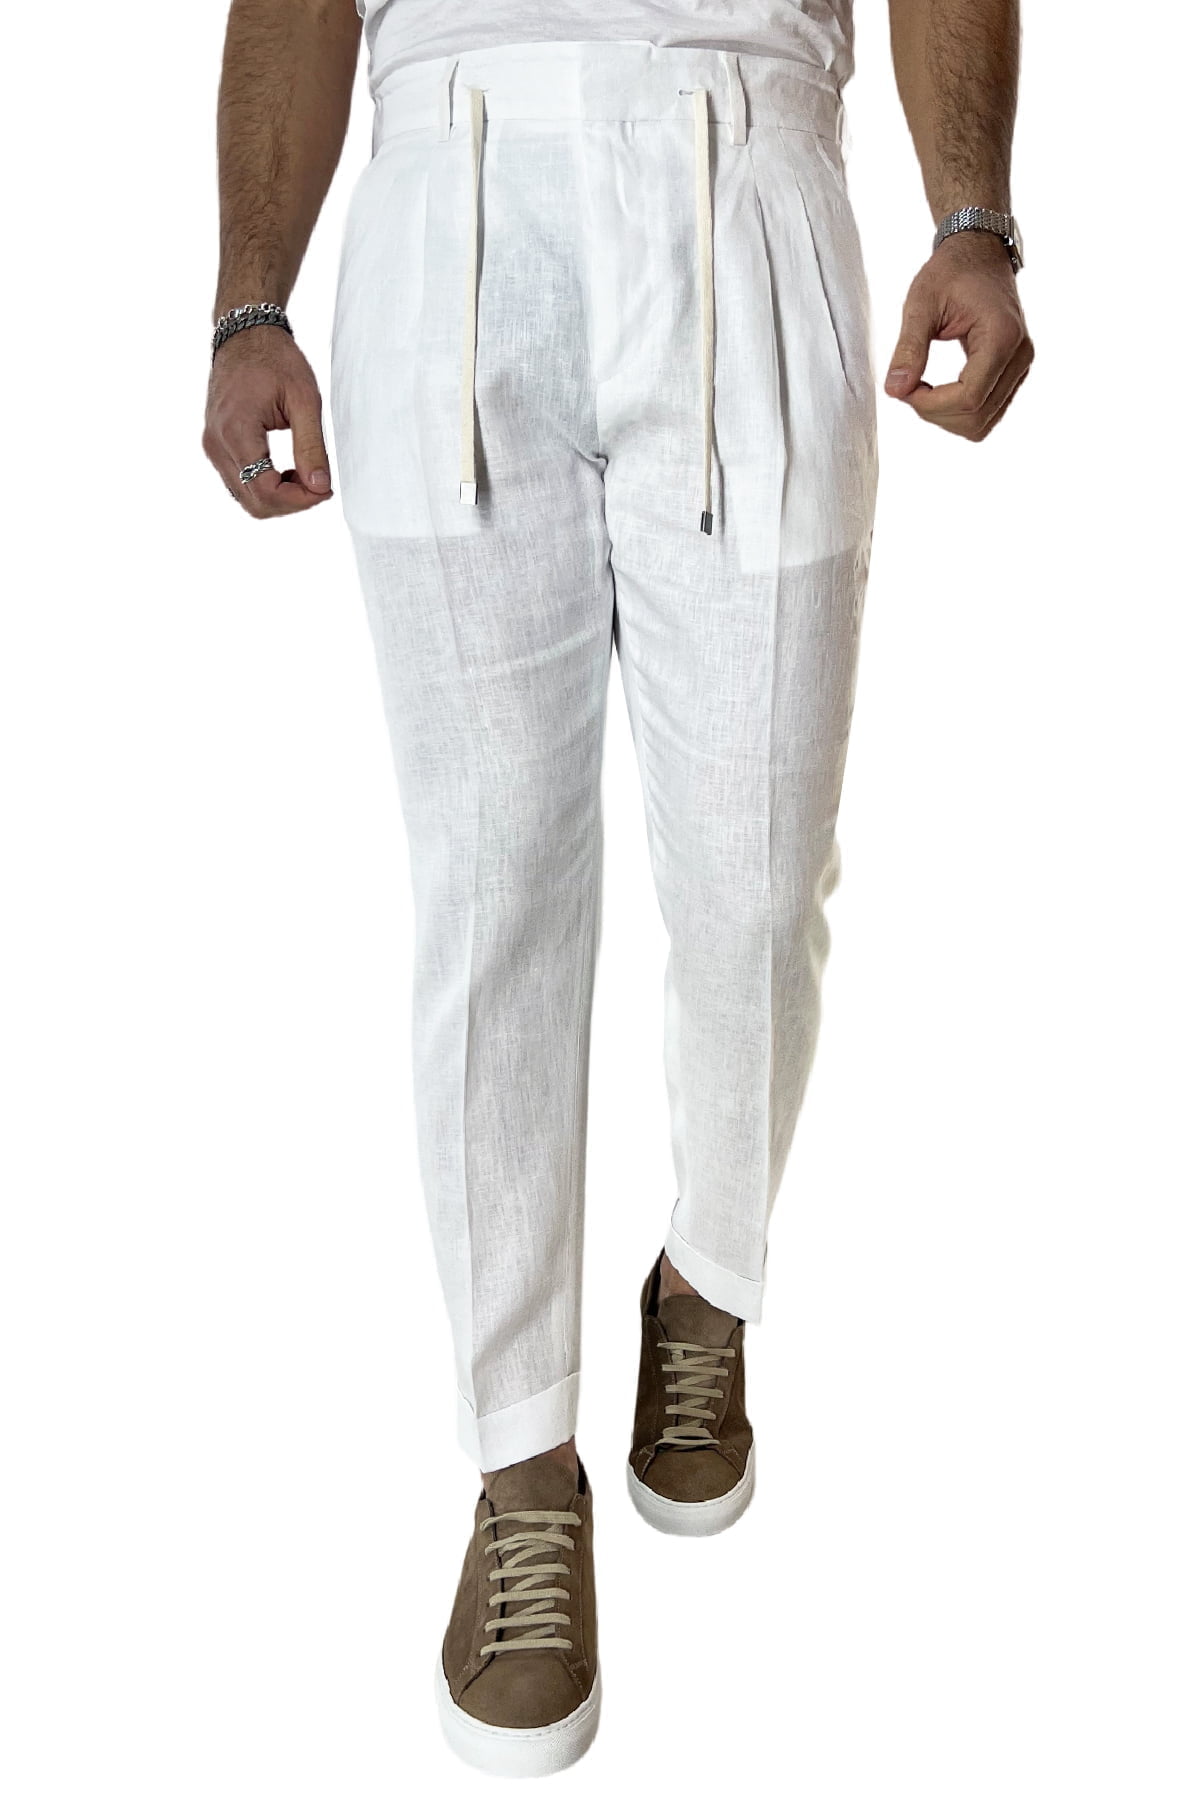 Pantalaccio uomo bianco in lino 100% tasca america con doppia pence e laccio in vita risvolto 4cm